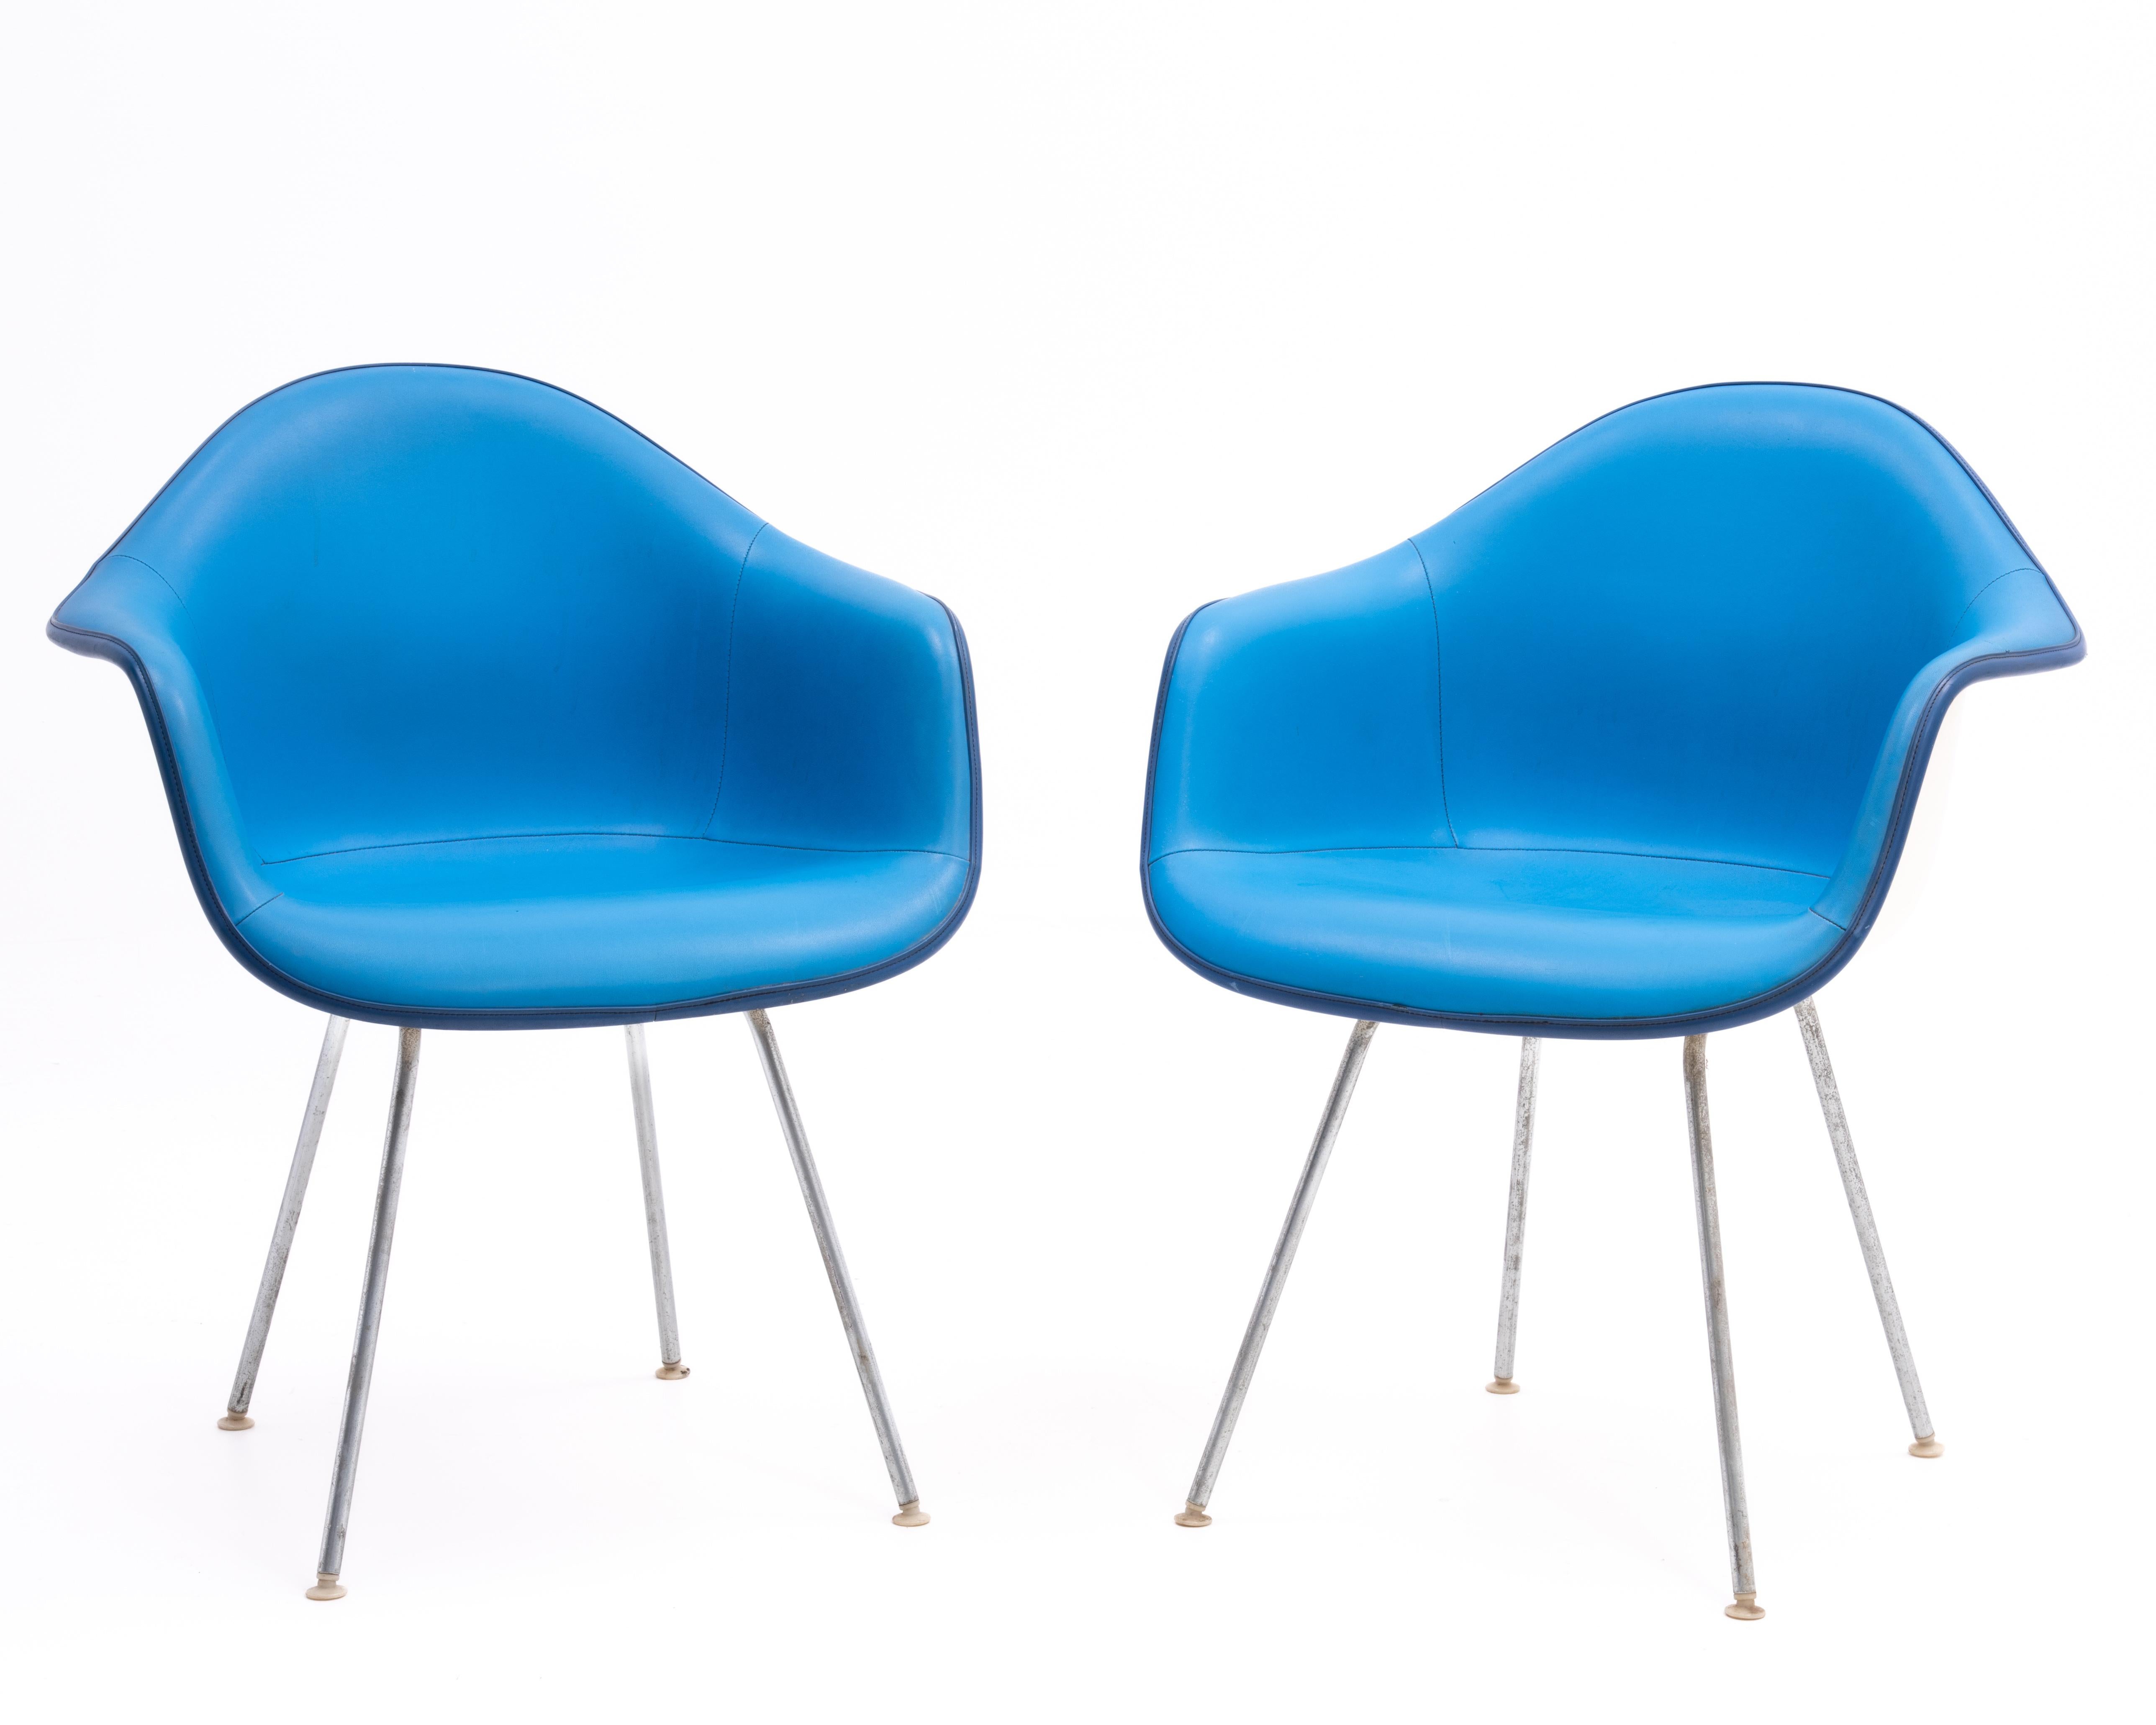 Ein Paar Fiberglas-Armschalenstühle, entworfen von Ray & Charles Eames und hergestellt von Herman Miller im Jahr 1972. Die weißen Schalen bilden einen schönen Kontrast zu den azurblauen Sitzen und den königsblauen Paspeln. Die weiße Schale und der